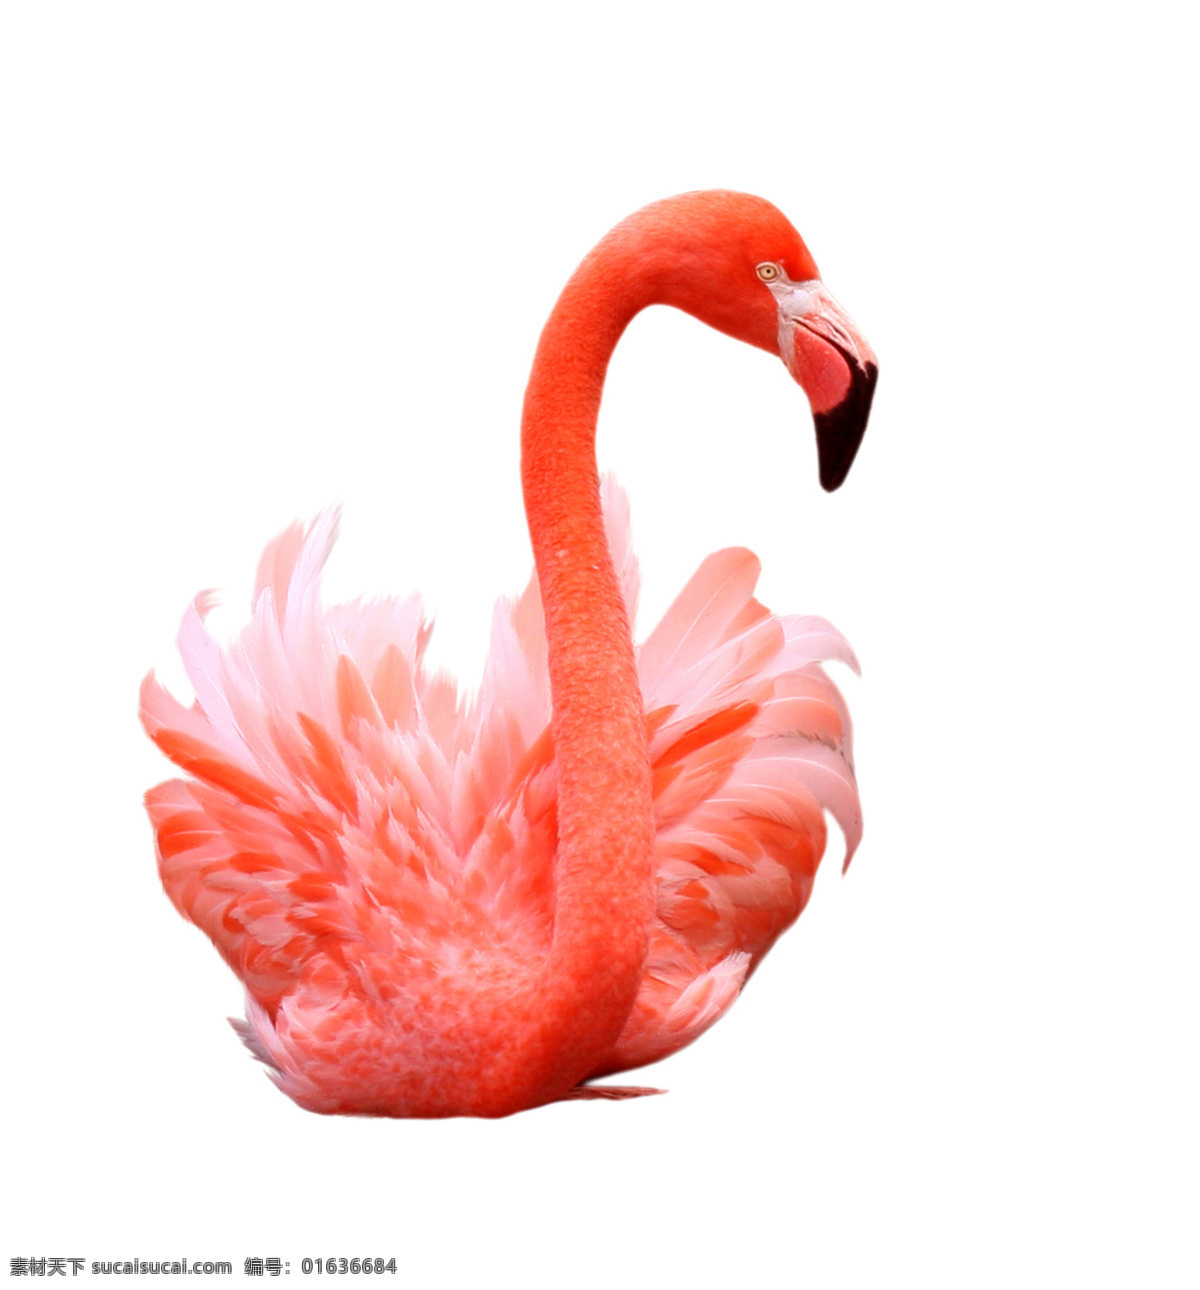 红鹳 红鹤 鸟类 火烈鸟觅食 鸟 一只火烈鸟 动物园 野生动物 共享素材